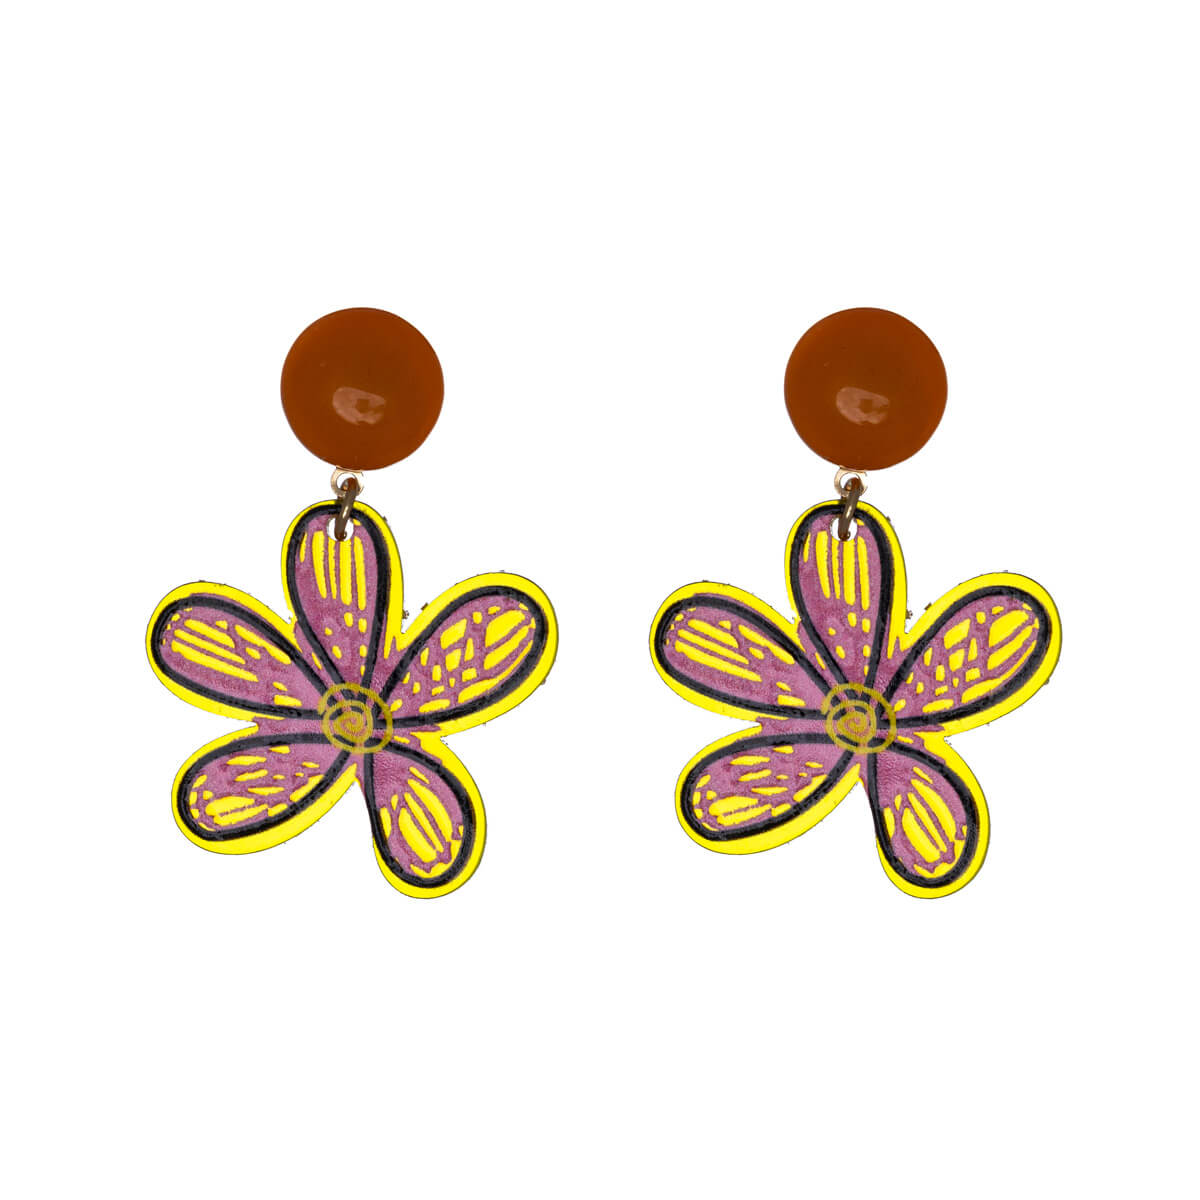 Plastic flower earrings